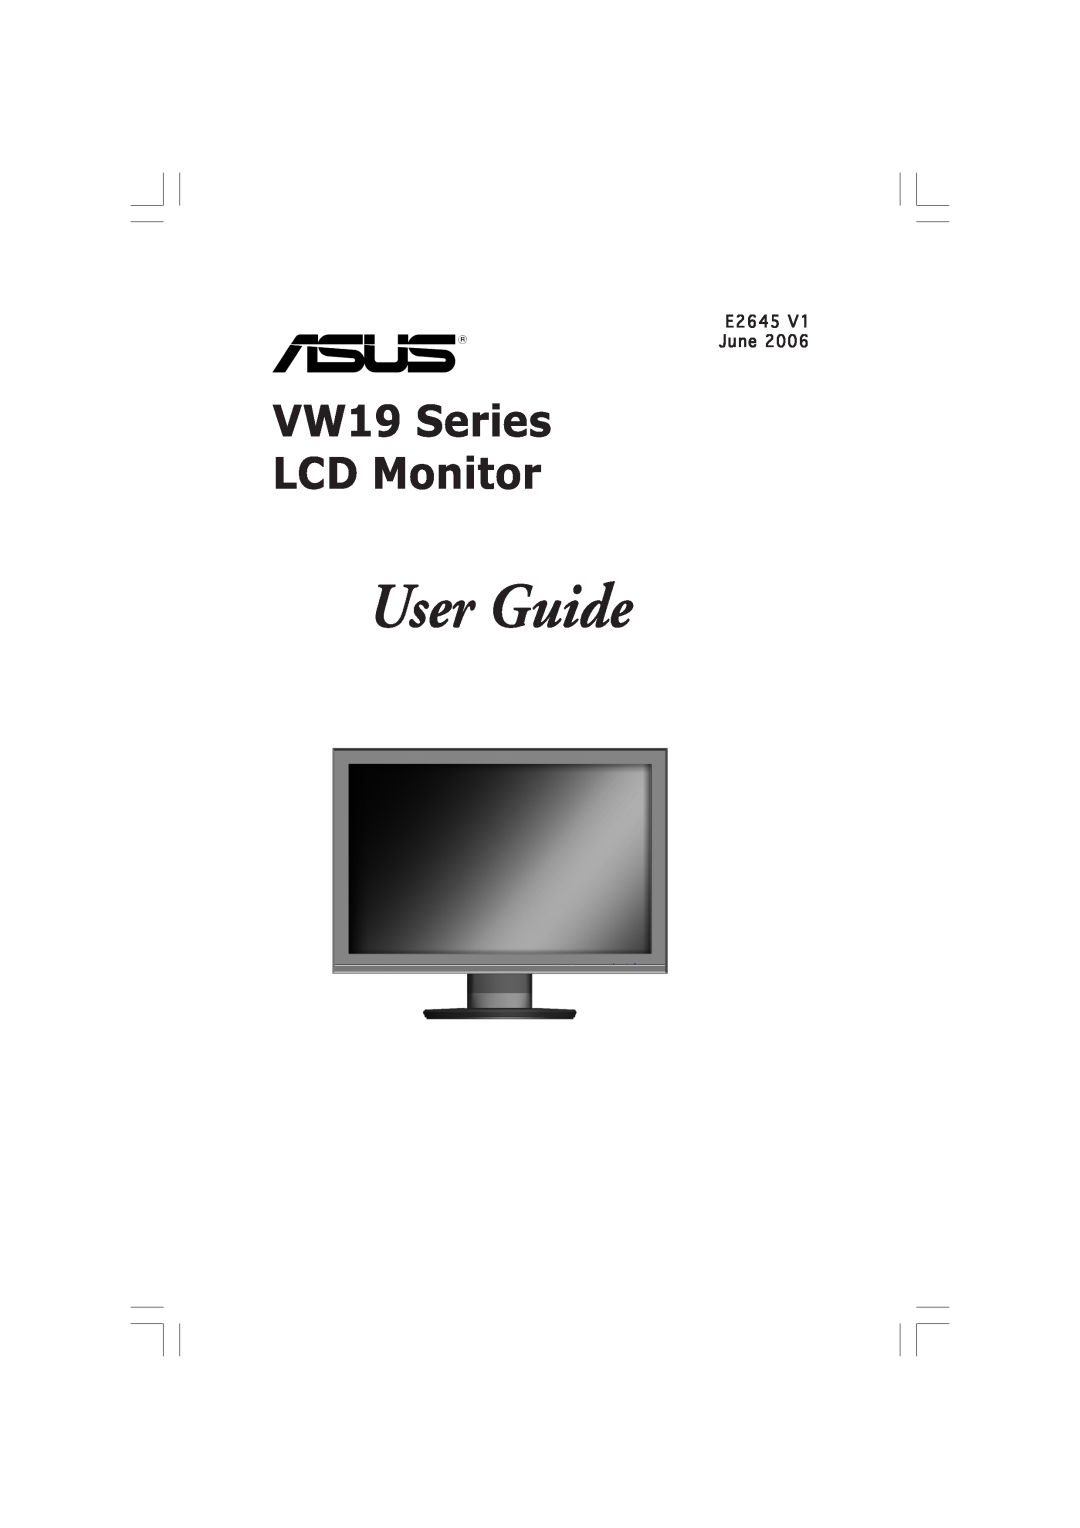 Asus VW191D manual E2645 June, User Guide, VW19 Series LCD Monitor 